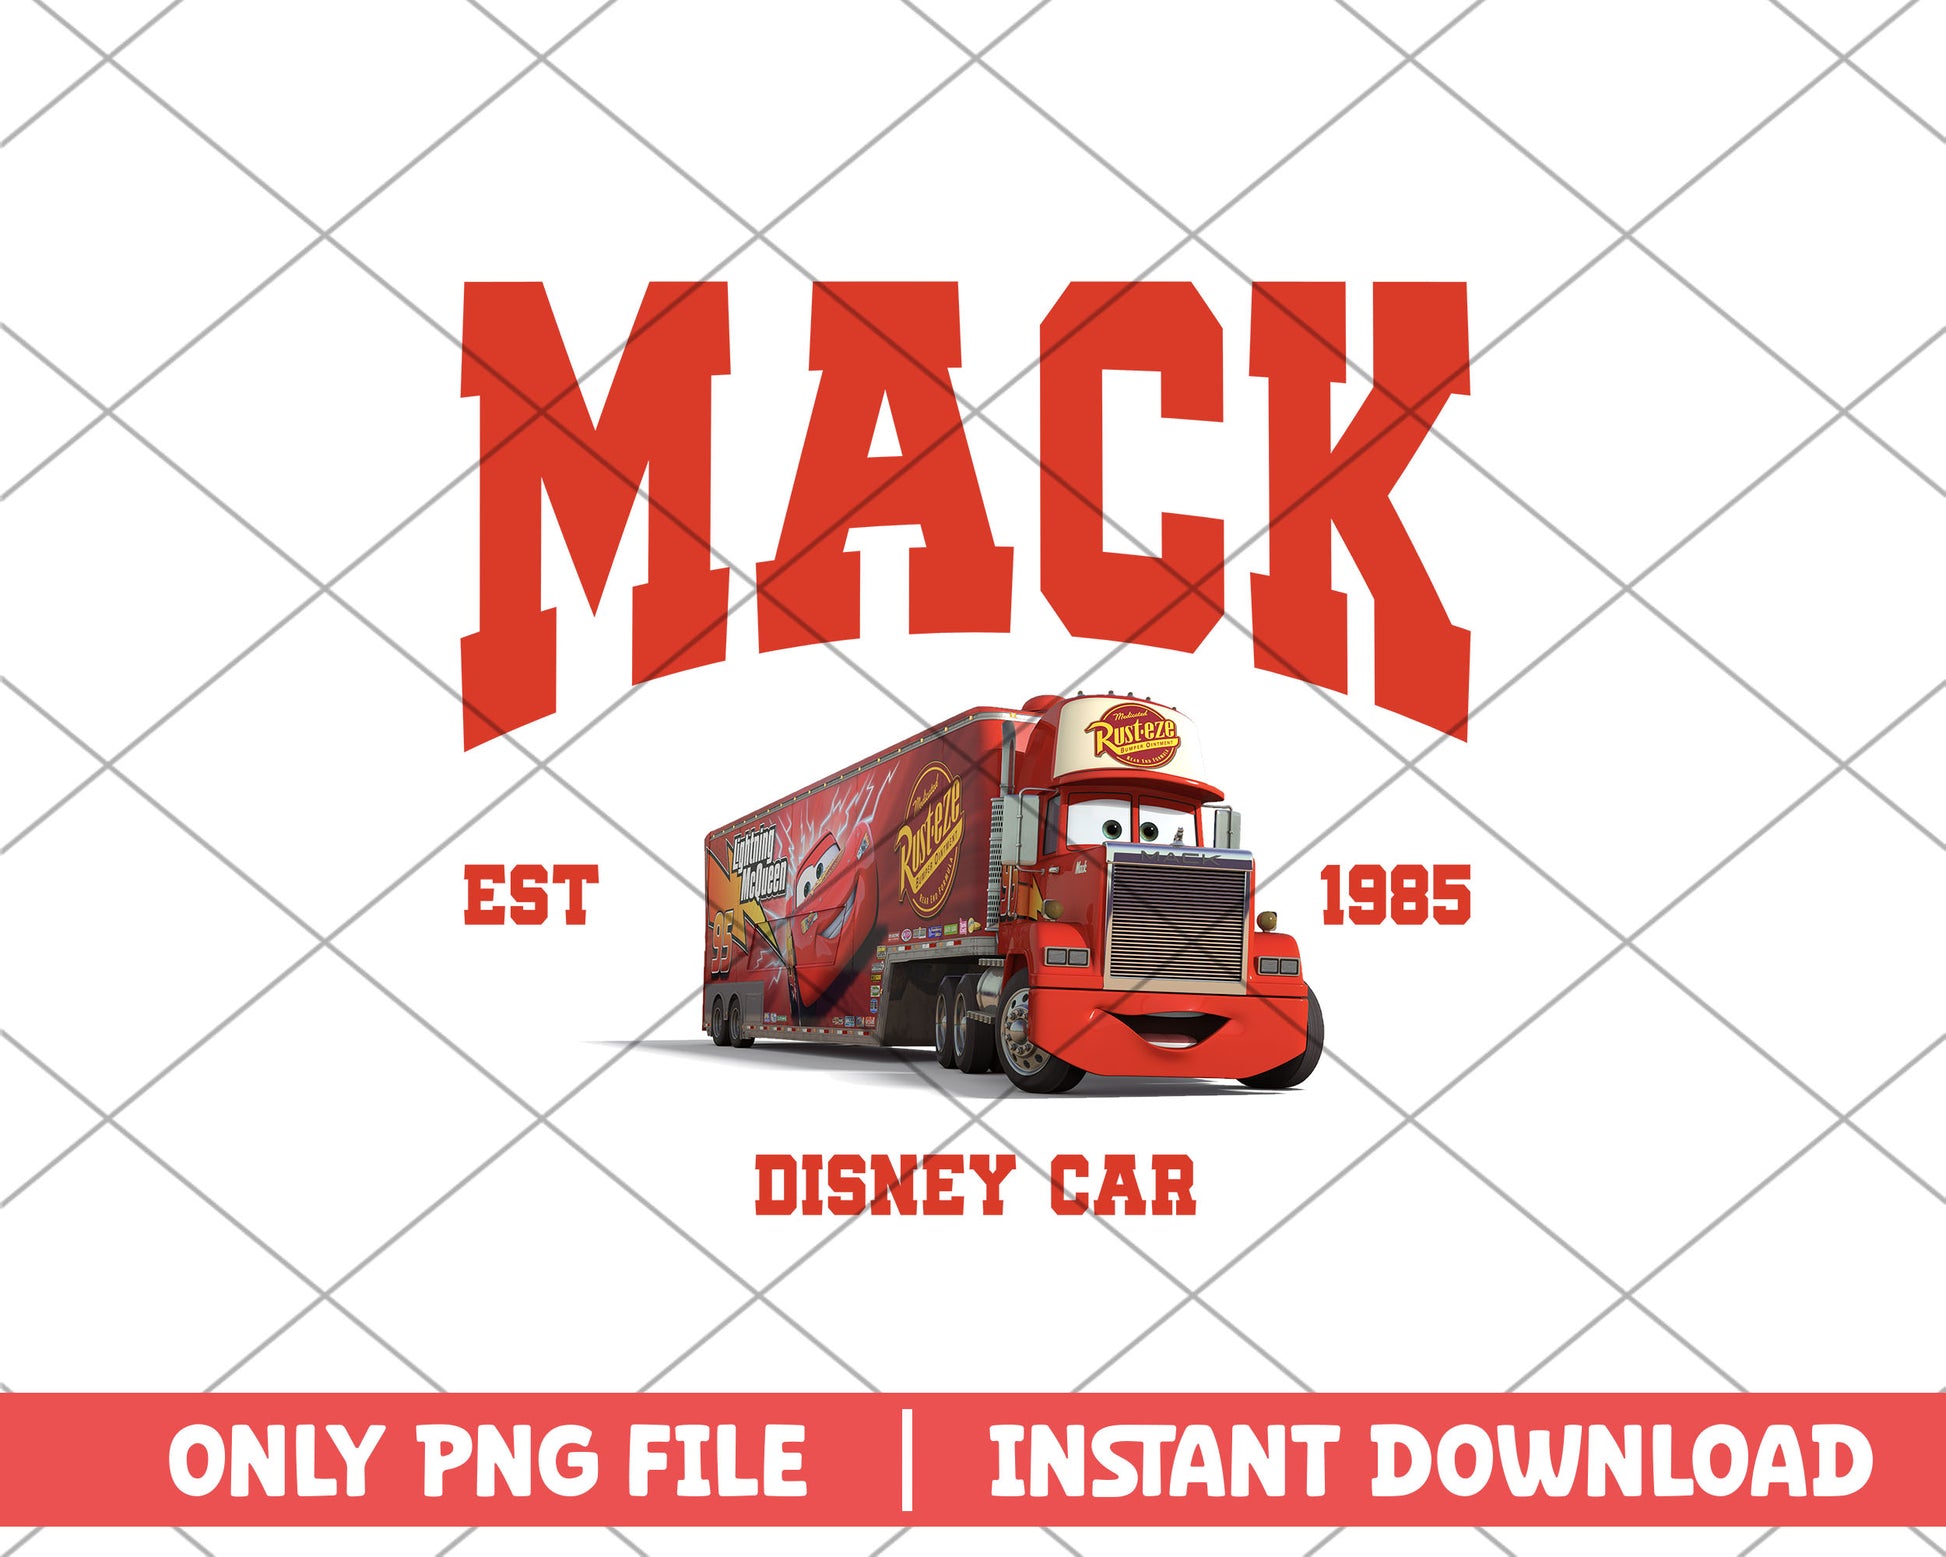 Disney car mack disney png